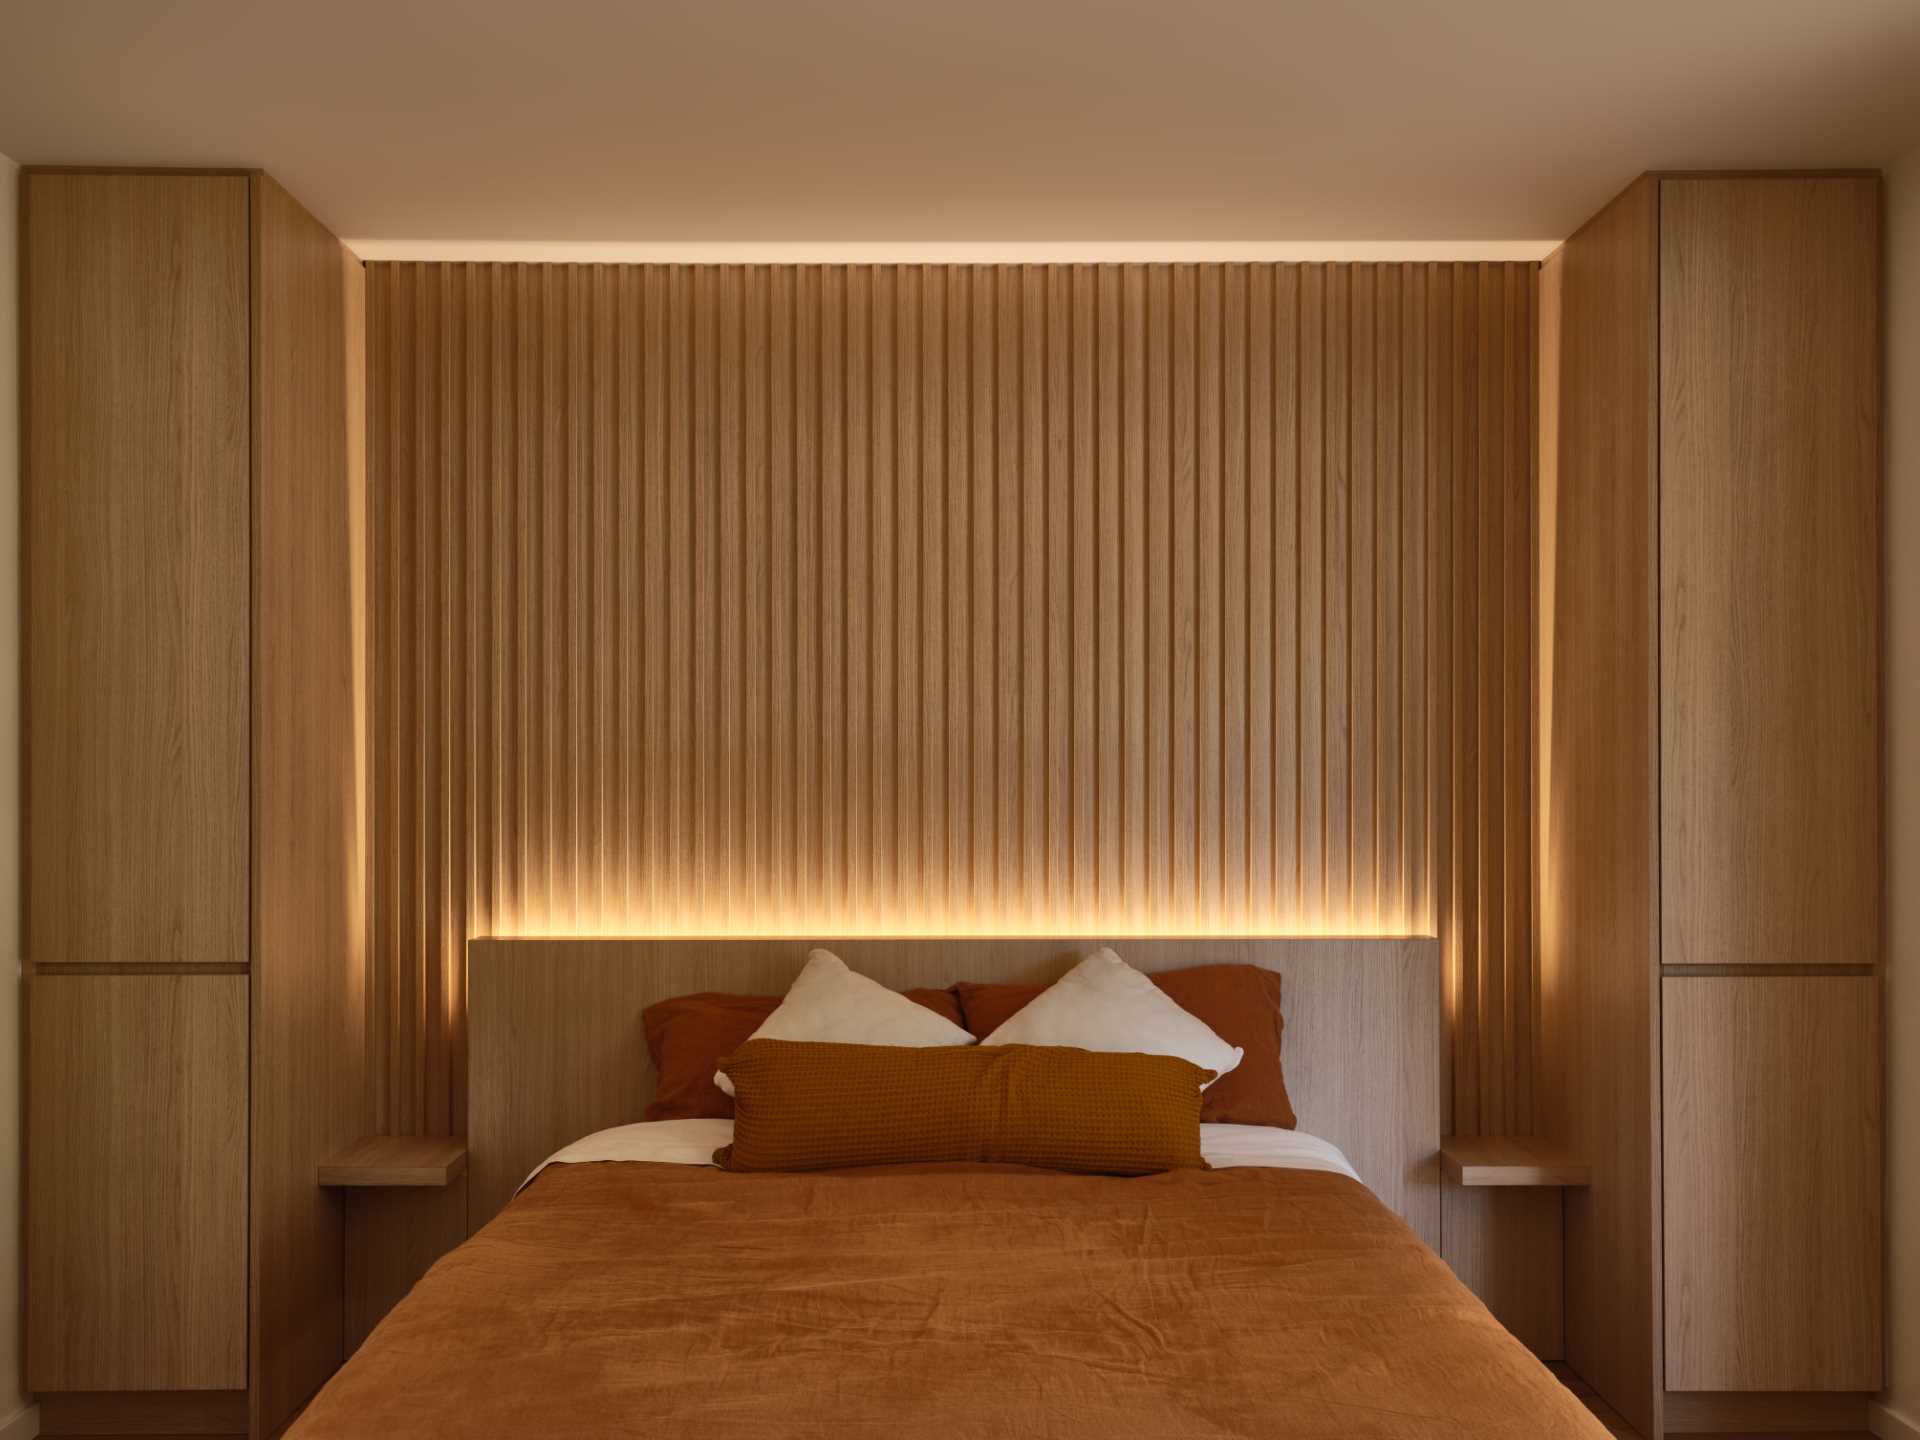 اتاق خواب مدرن با اندود چوبی با نور مخفی.